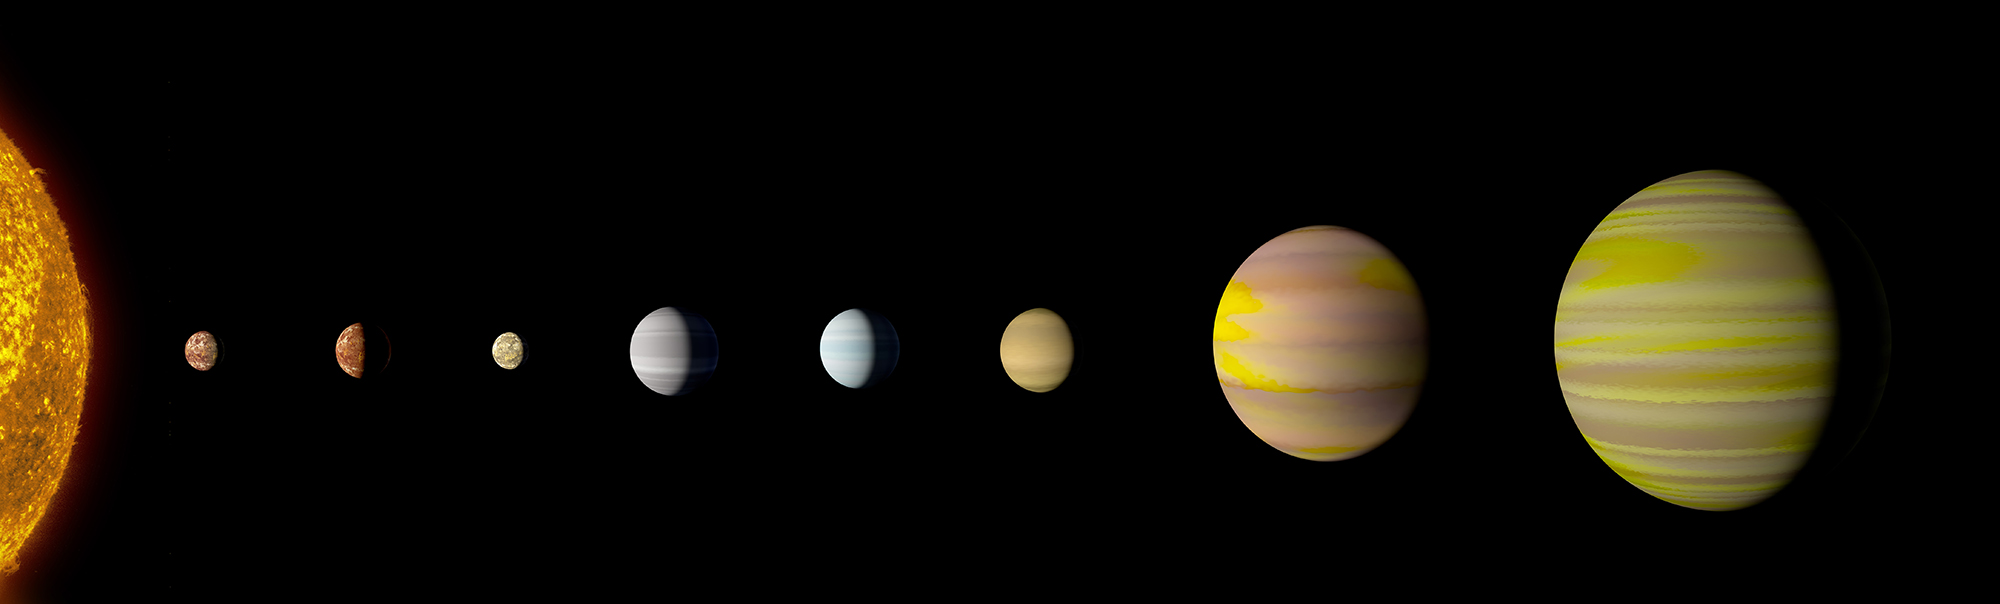 El Sistema Kepler-90 es ahora el primer sistema solar formado por tantos planetas como el nuestro. Credits: NASA/Wendy Stenzel